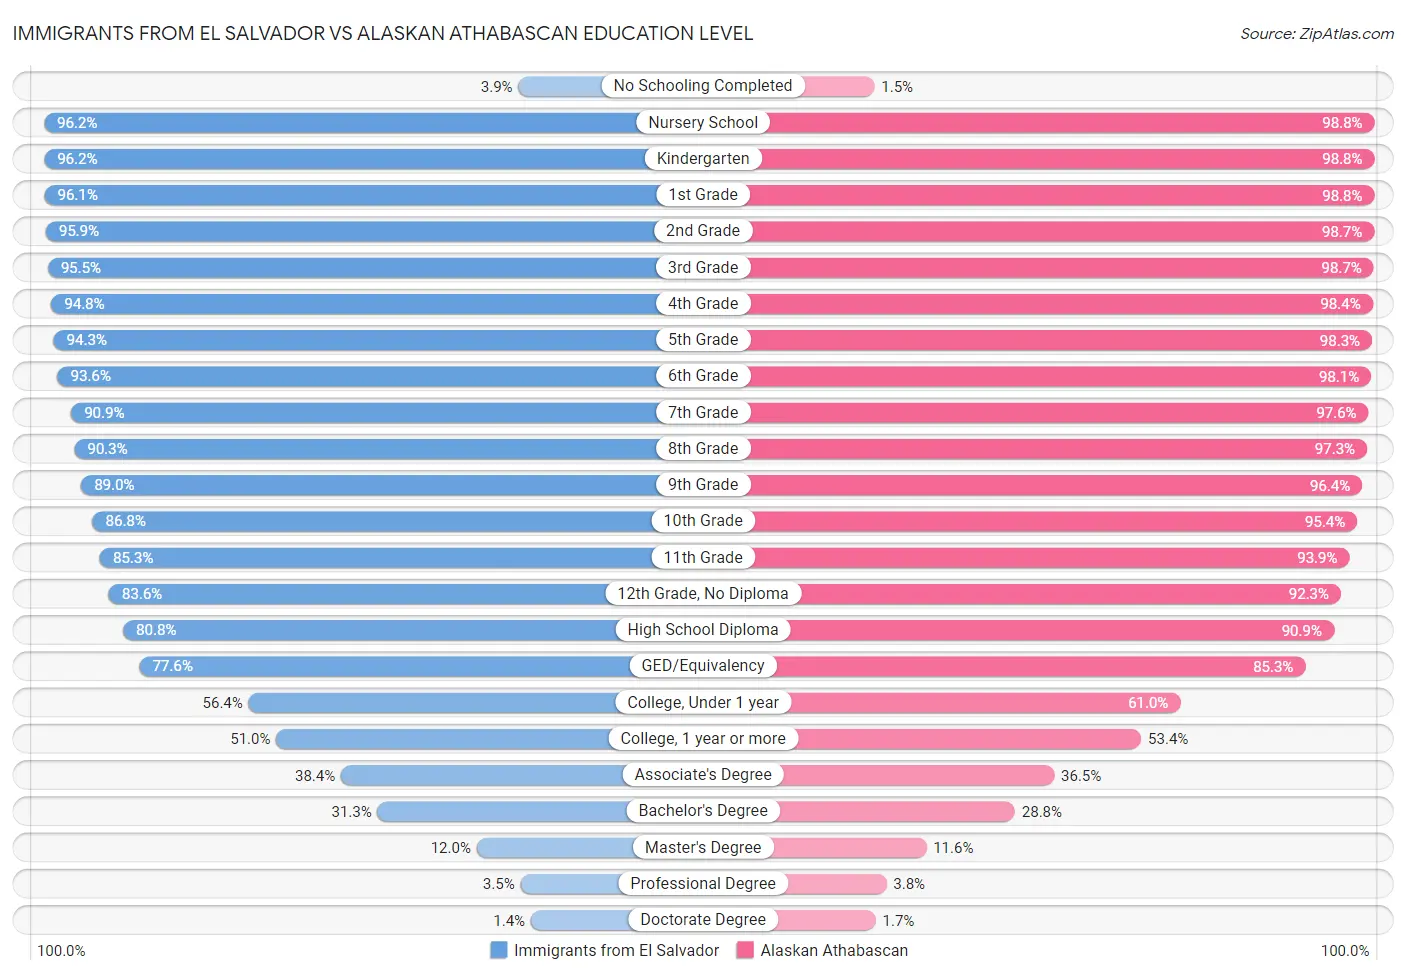 Immigrants from El Salvador vs Alaskan Athabascan Education Level